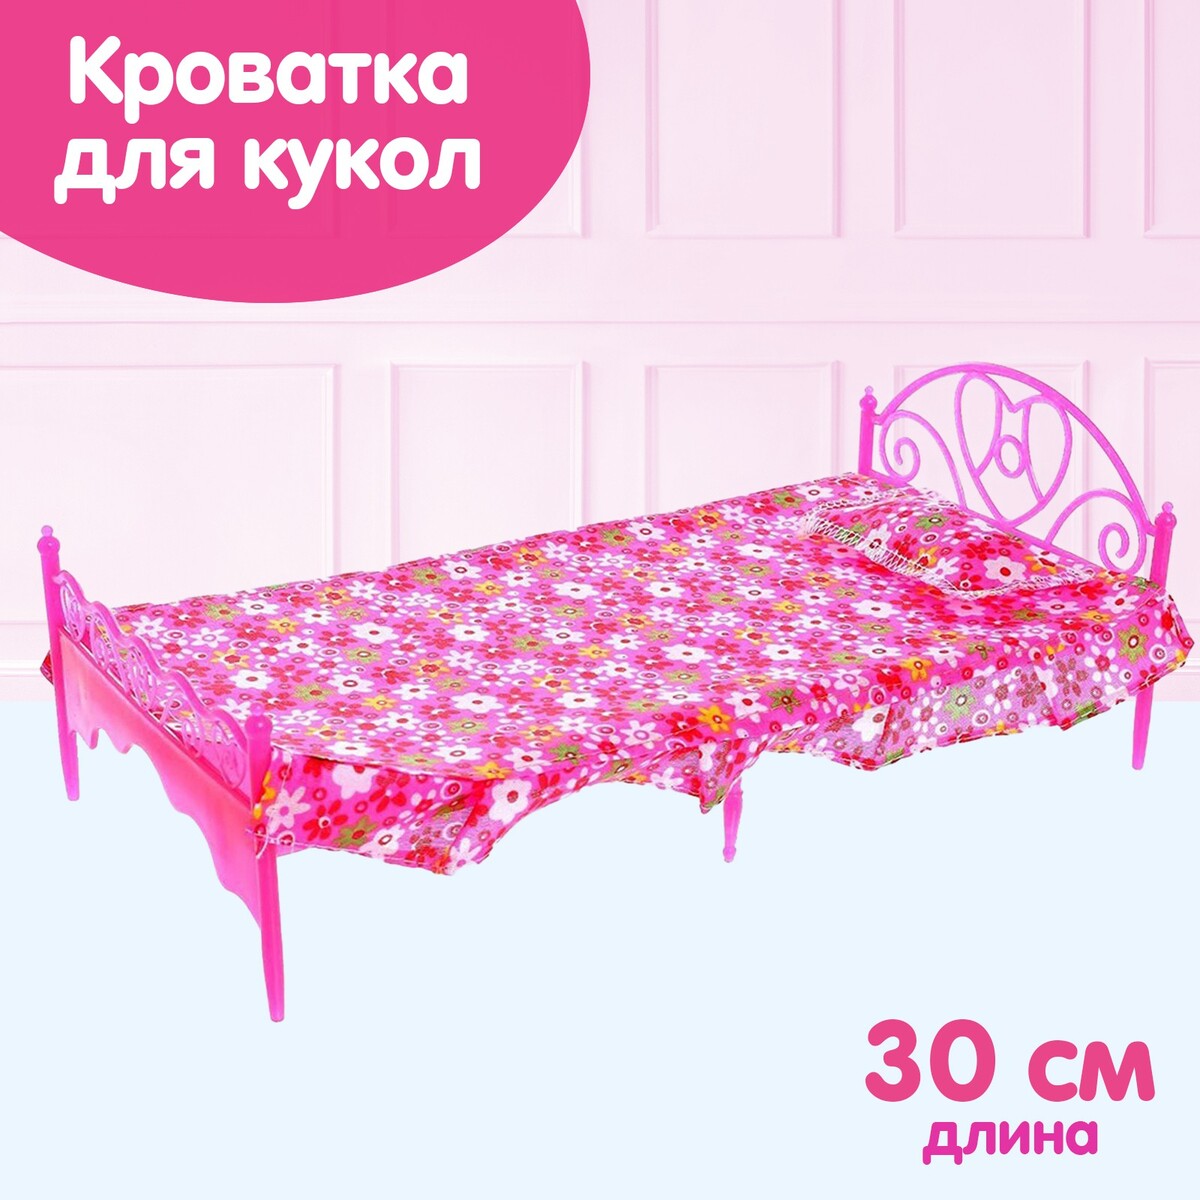 Кроватка для кукол кроватка 30 х 17 х 16 см